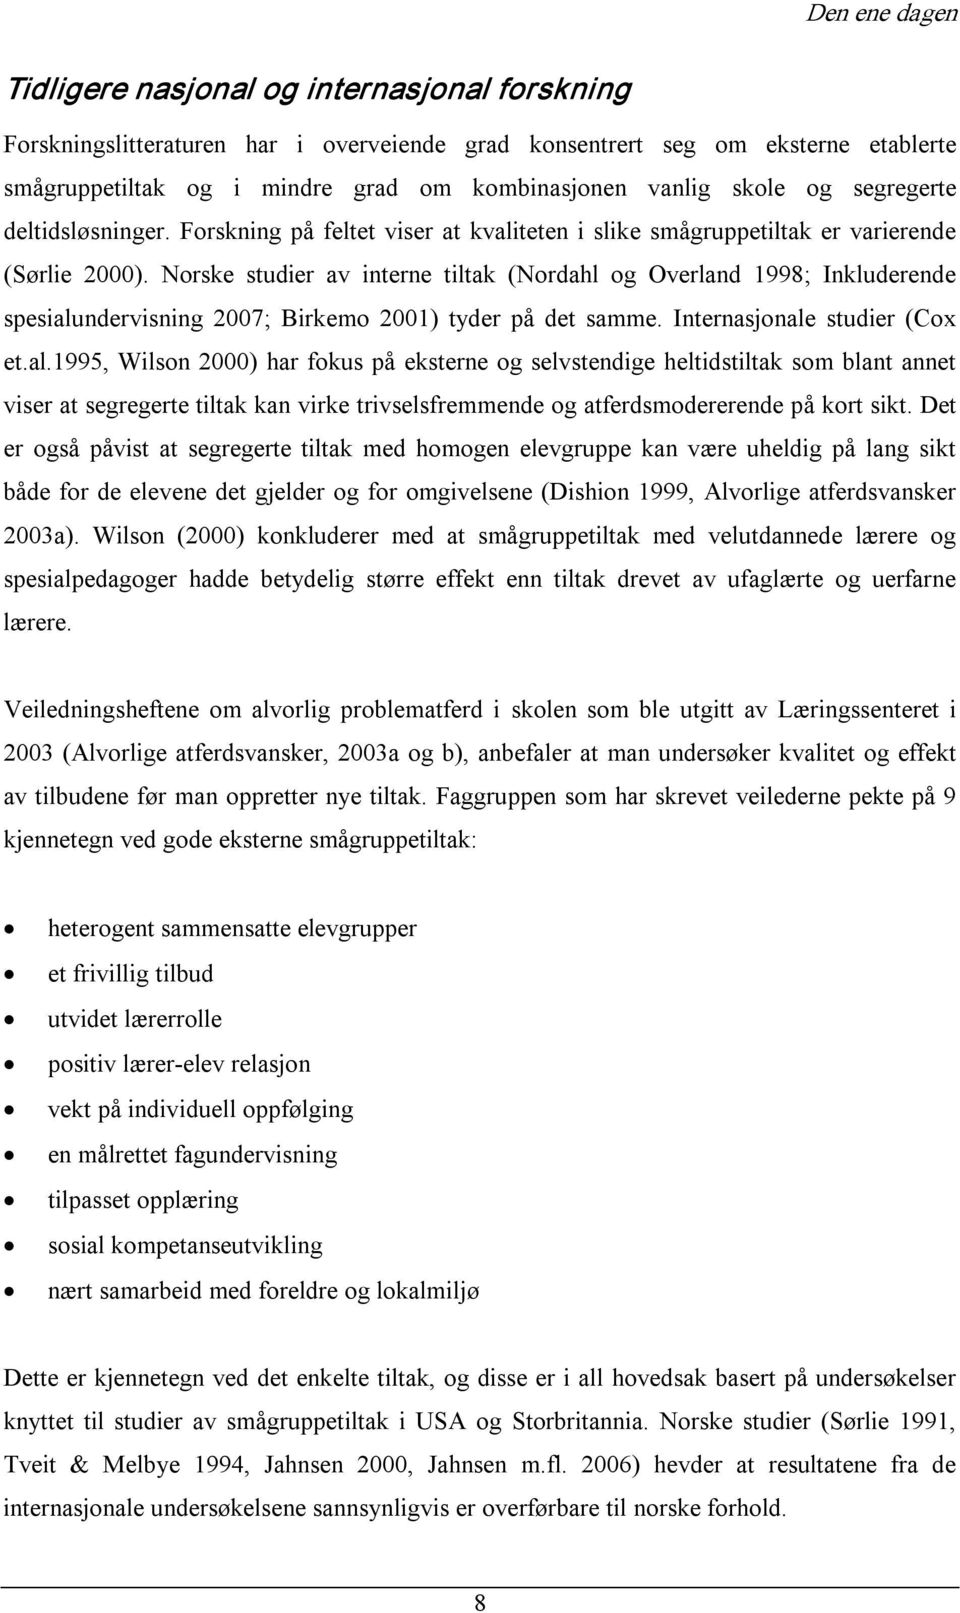 Norske studier av interne tiltak (Nordahl og Overland 1998; Inkluderende spesialu